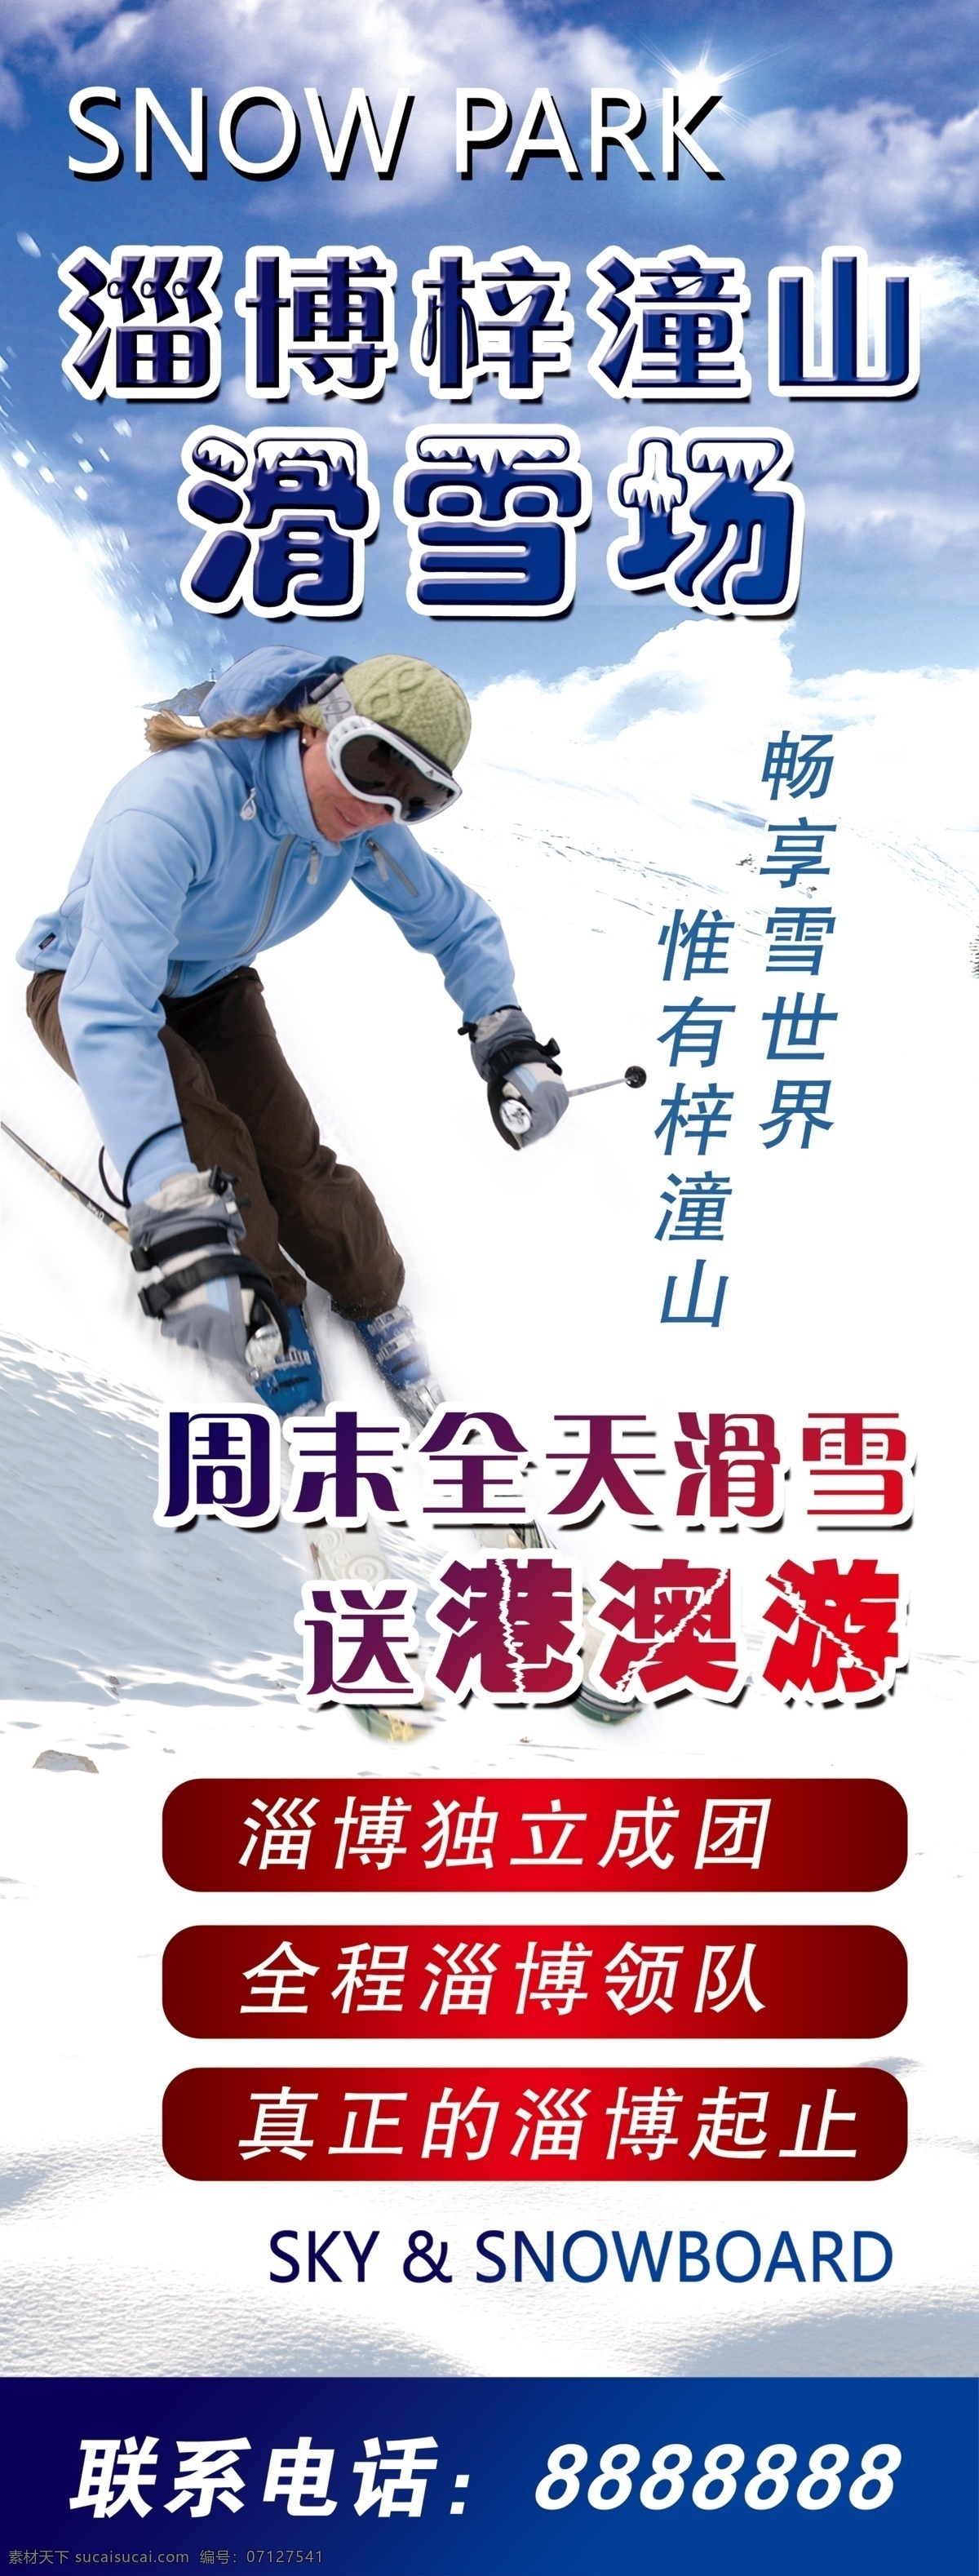 滑雪 滑雪海报 单板滑雪 滑雪运动 滑雪宣传 滑雪展板 滑雪训练 滑雪培训 滑雪体育 滑板滑雪 滑雪大赛 滑雪比赛 滑雪广告 滑雪美女 白色